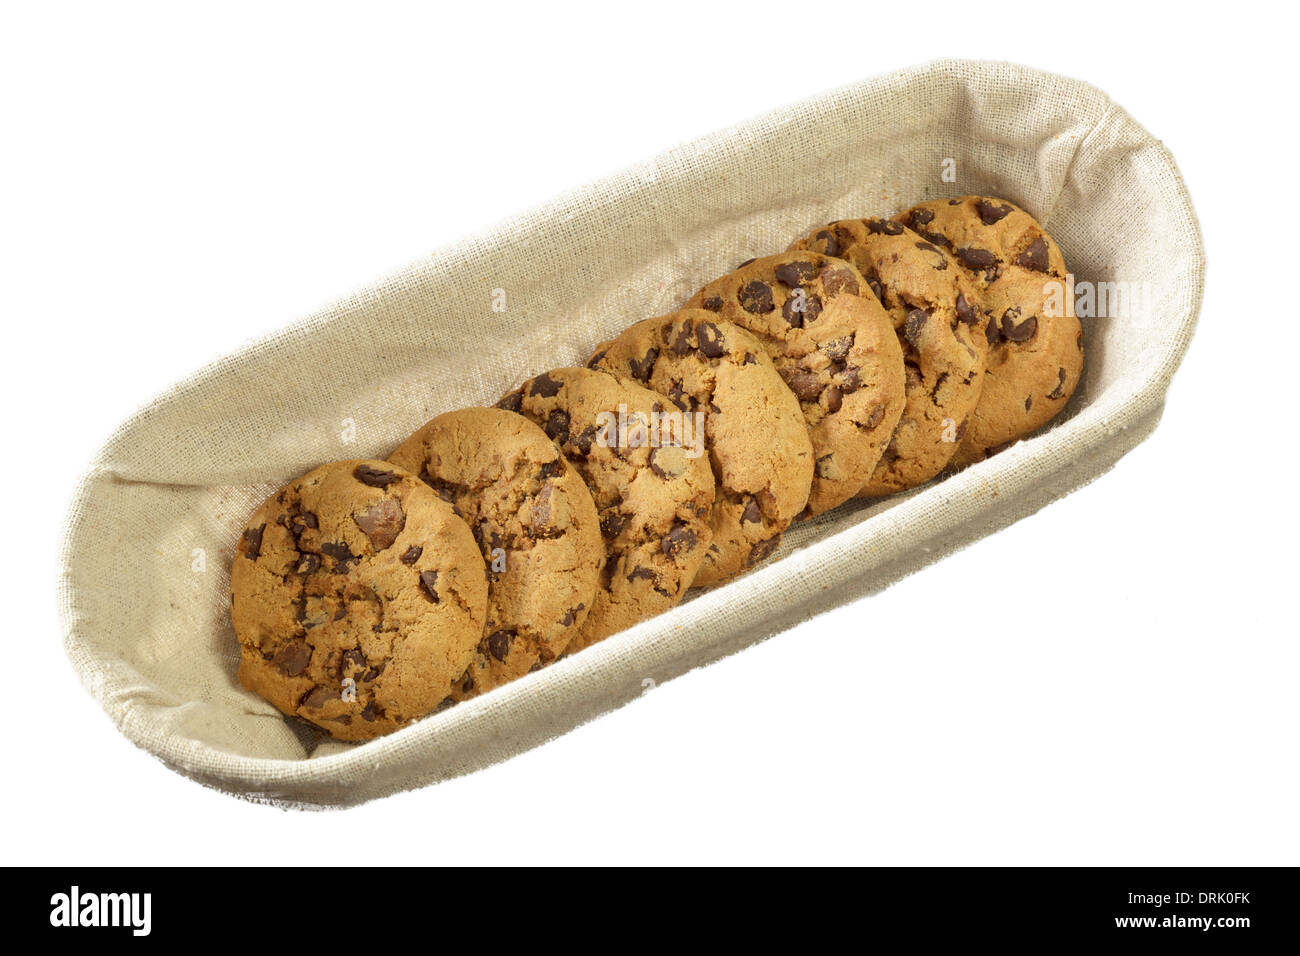 Las galletas con trocitos de chocolate Foto de stock